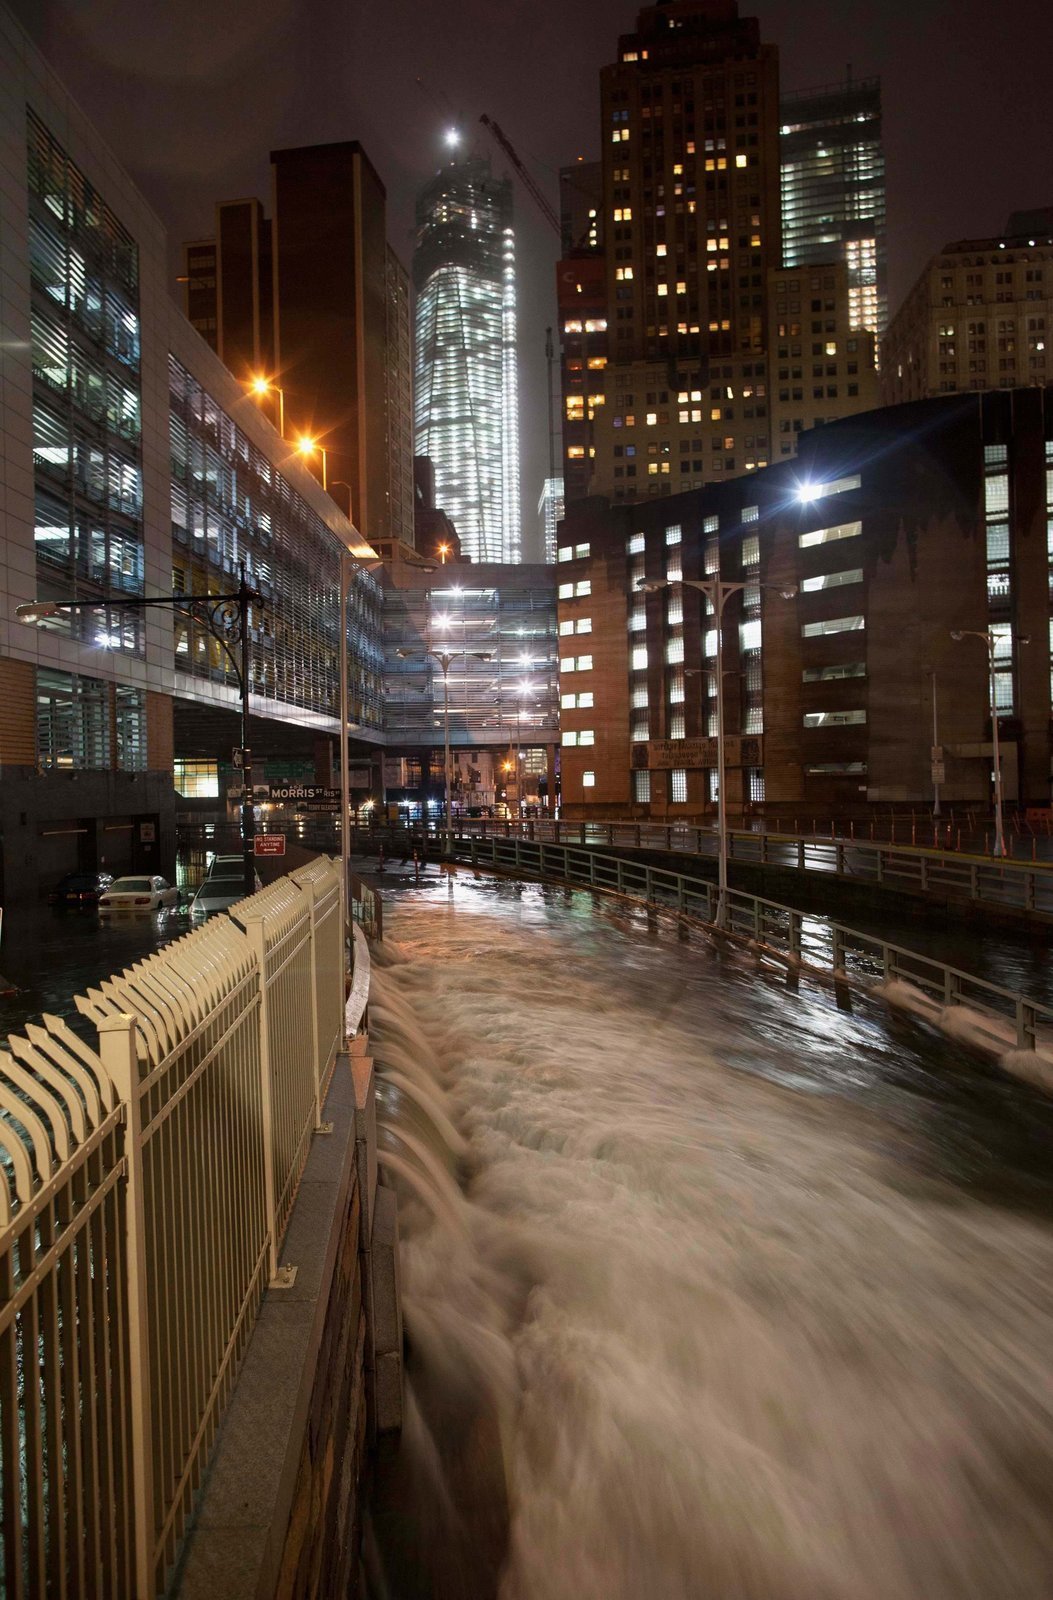 Tudy se obvykle odjíždí z Manhattanu do Brooklynu, Battery Tunnel se ovšem proměnil Další fotky apokalypsy, videa obřích vln a explozí na webu v divokou řeku...